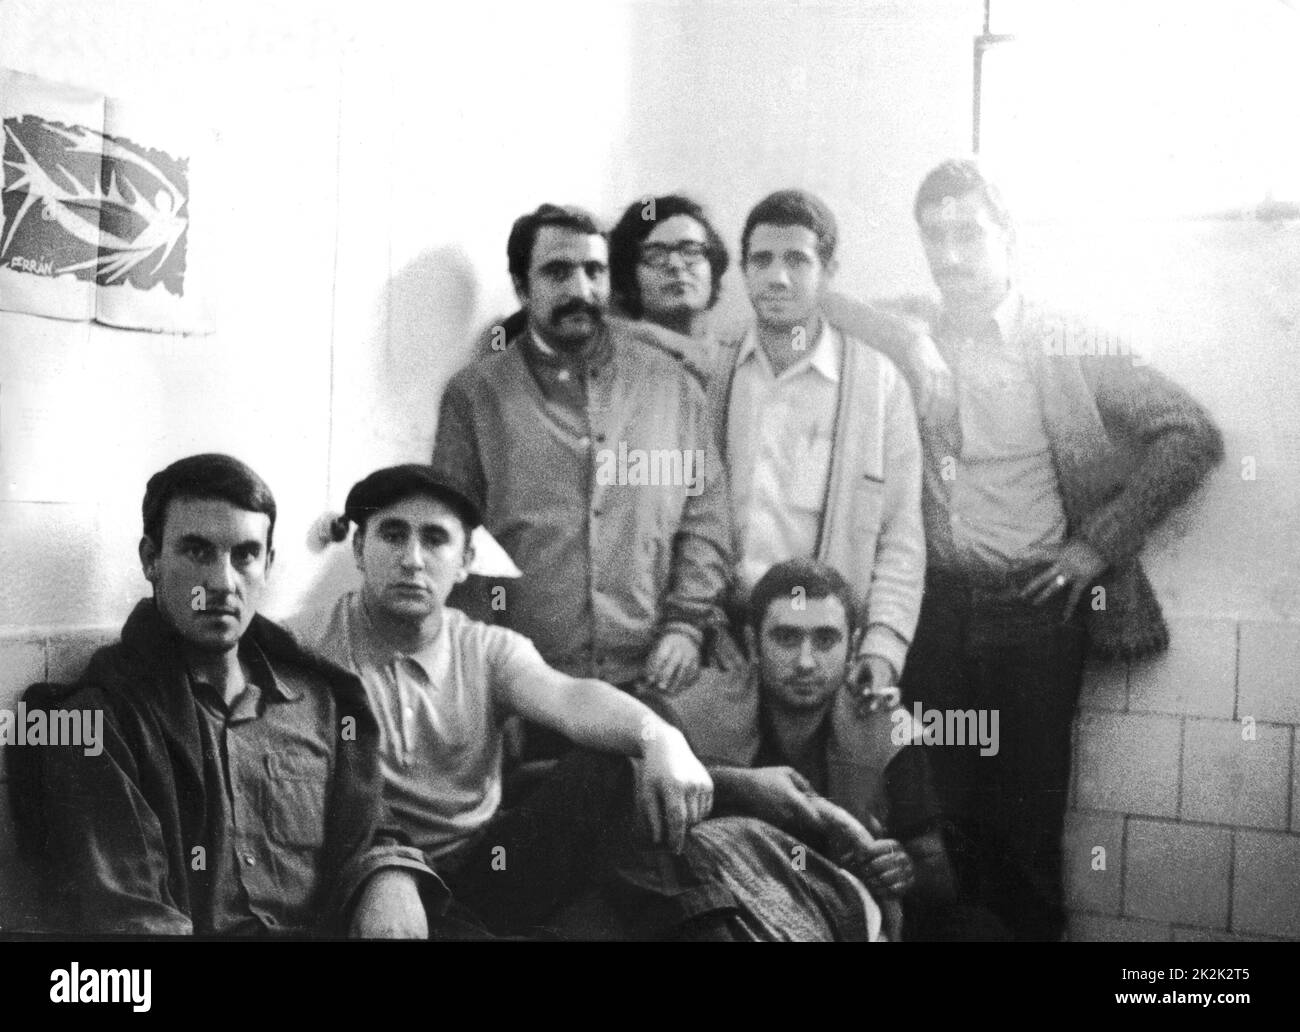 Madrid, prigionieri politici nella prigione di Carabanchel 1972 Guerre d'Espagne C.I.S.E. Foto Stock